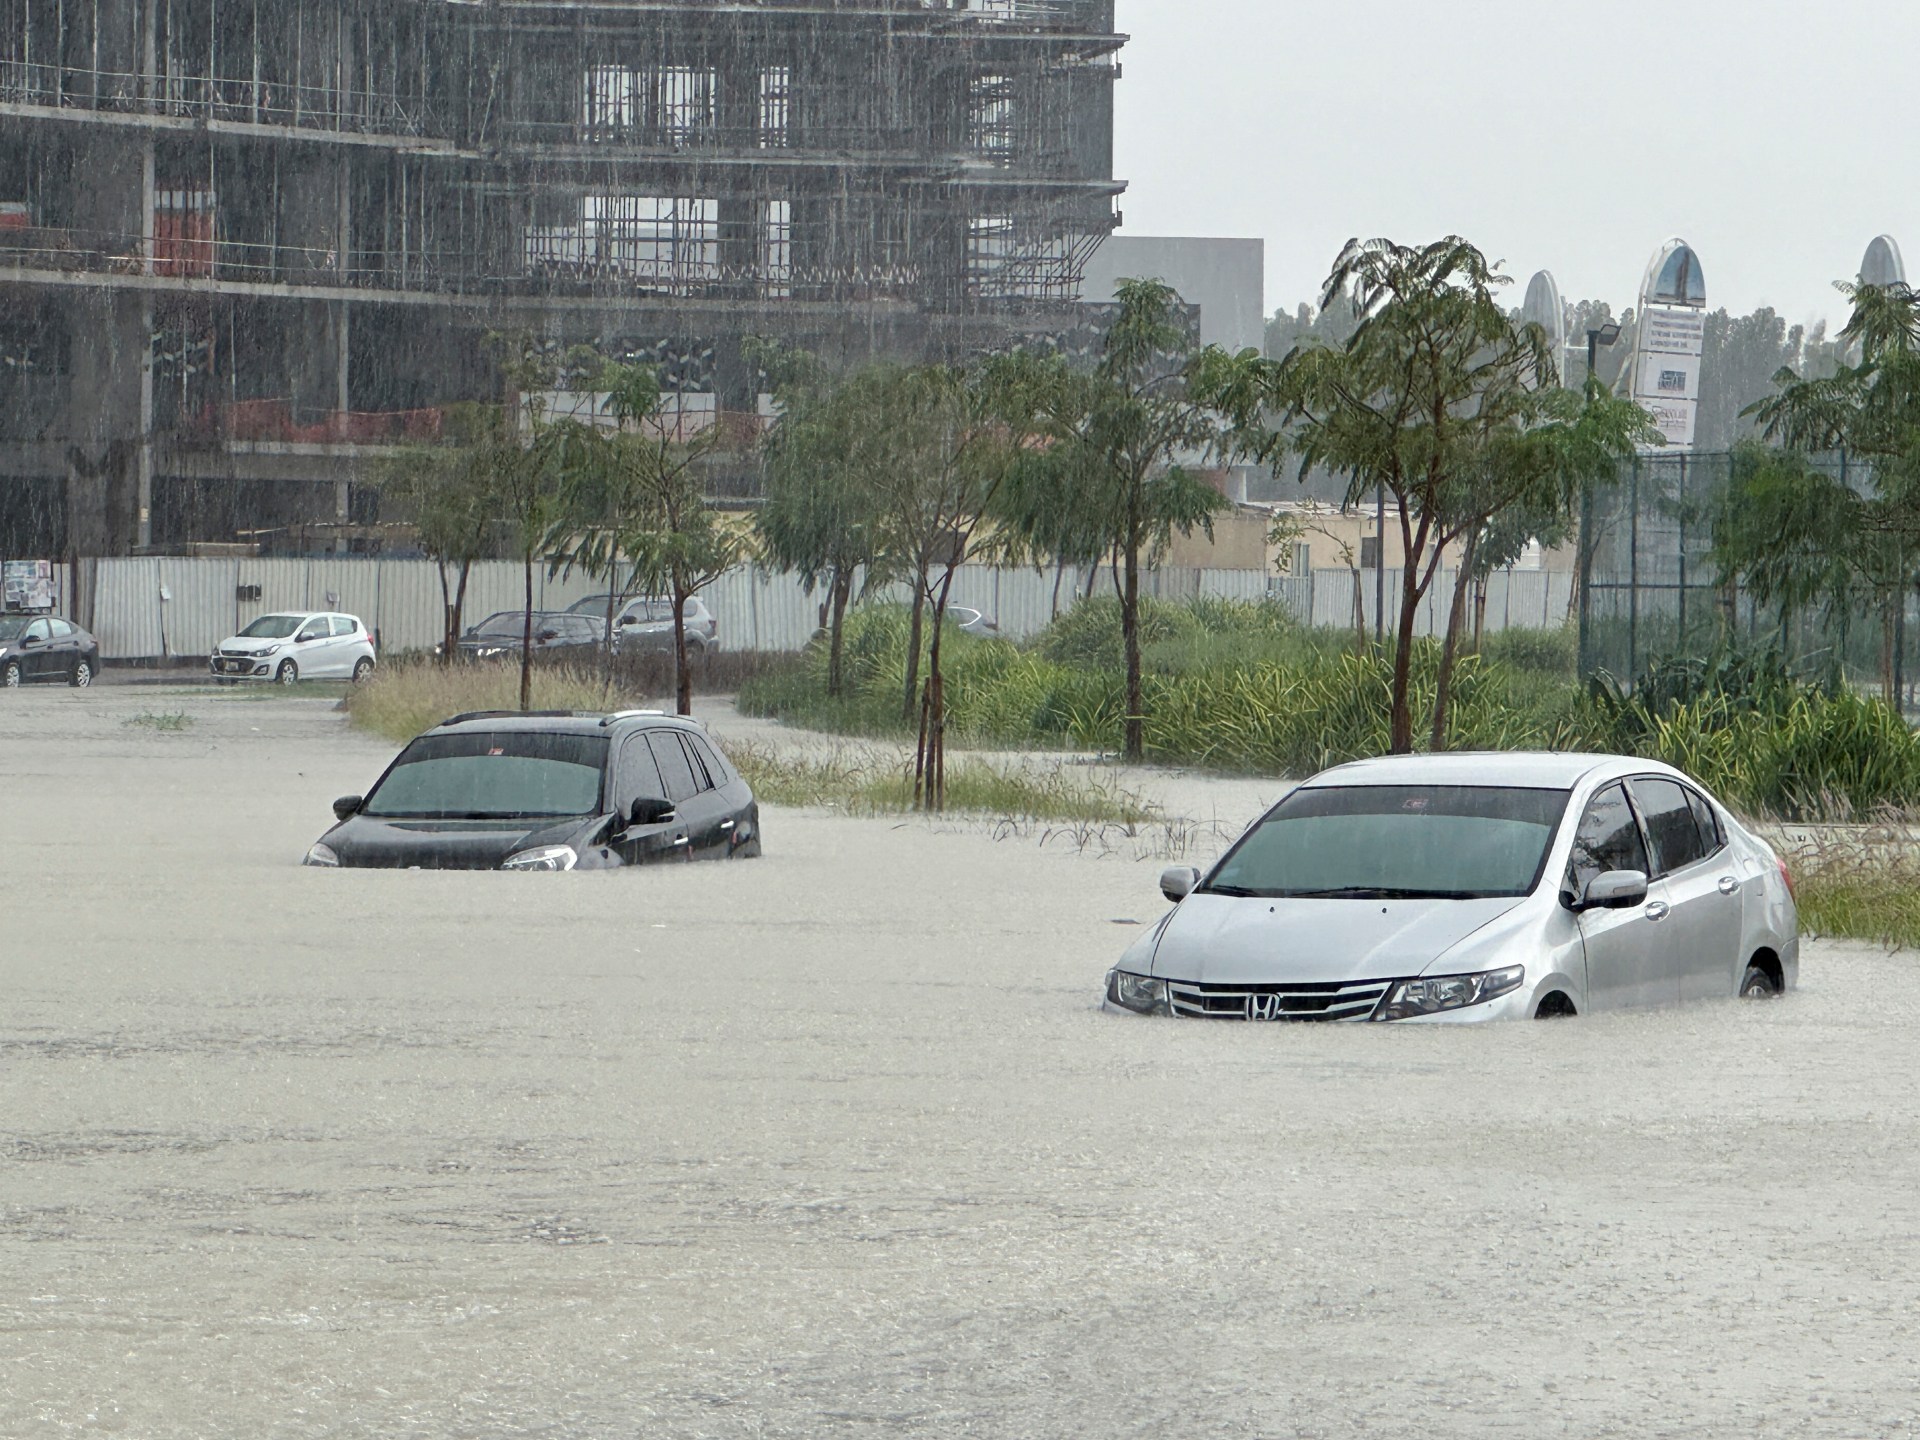 Apakah hujan mendung menyebabkan banjir di Dubai?  Mengapa para ahli mengatakan tidak |  Berita